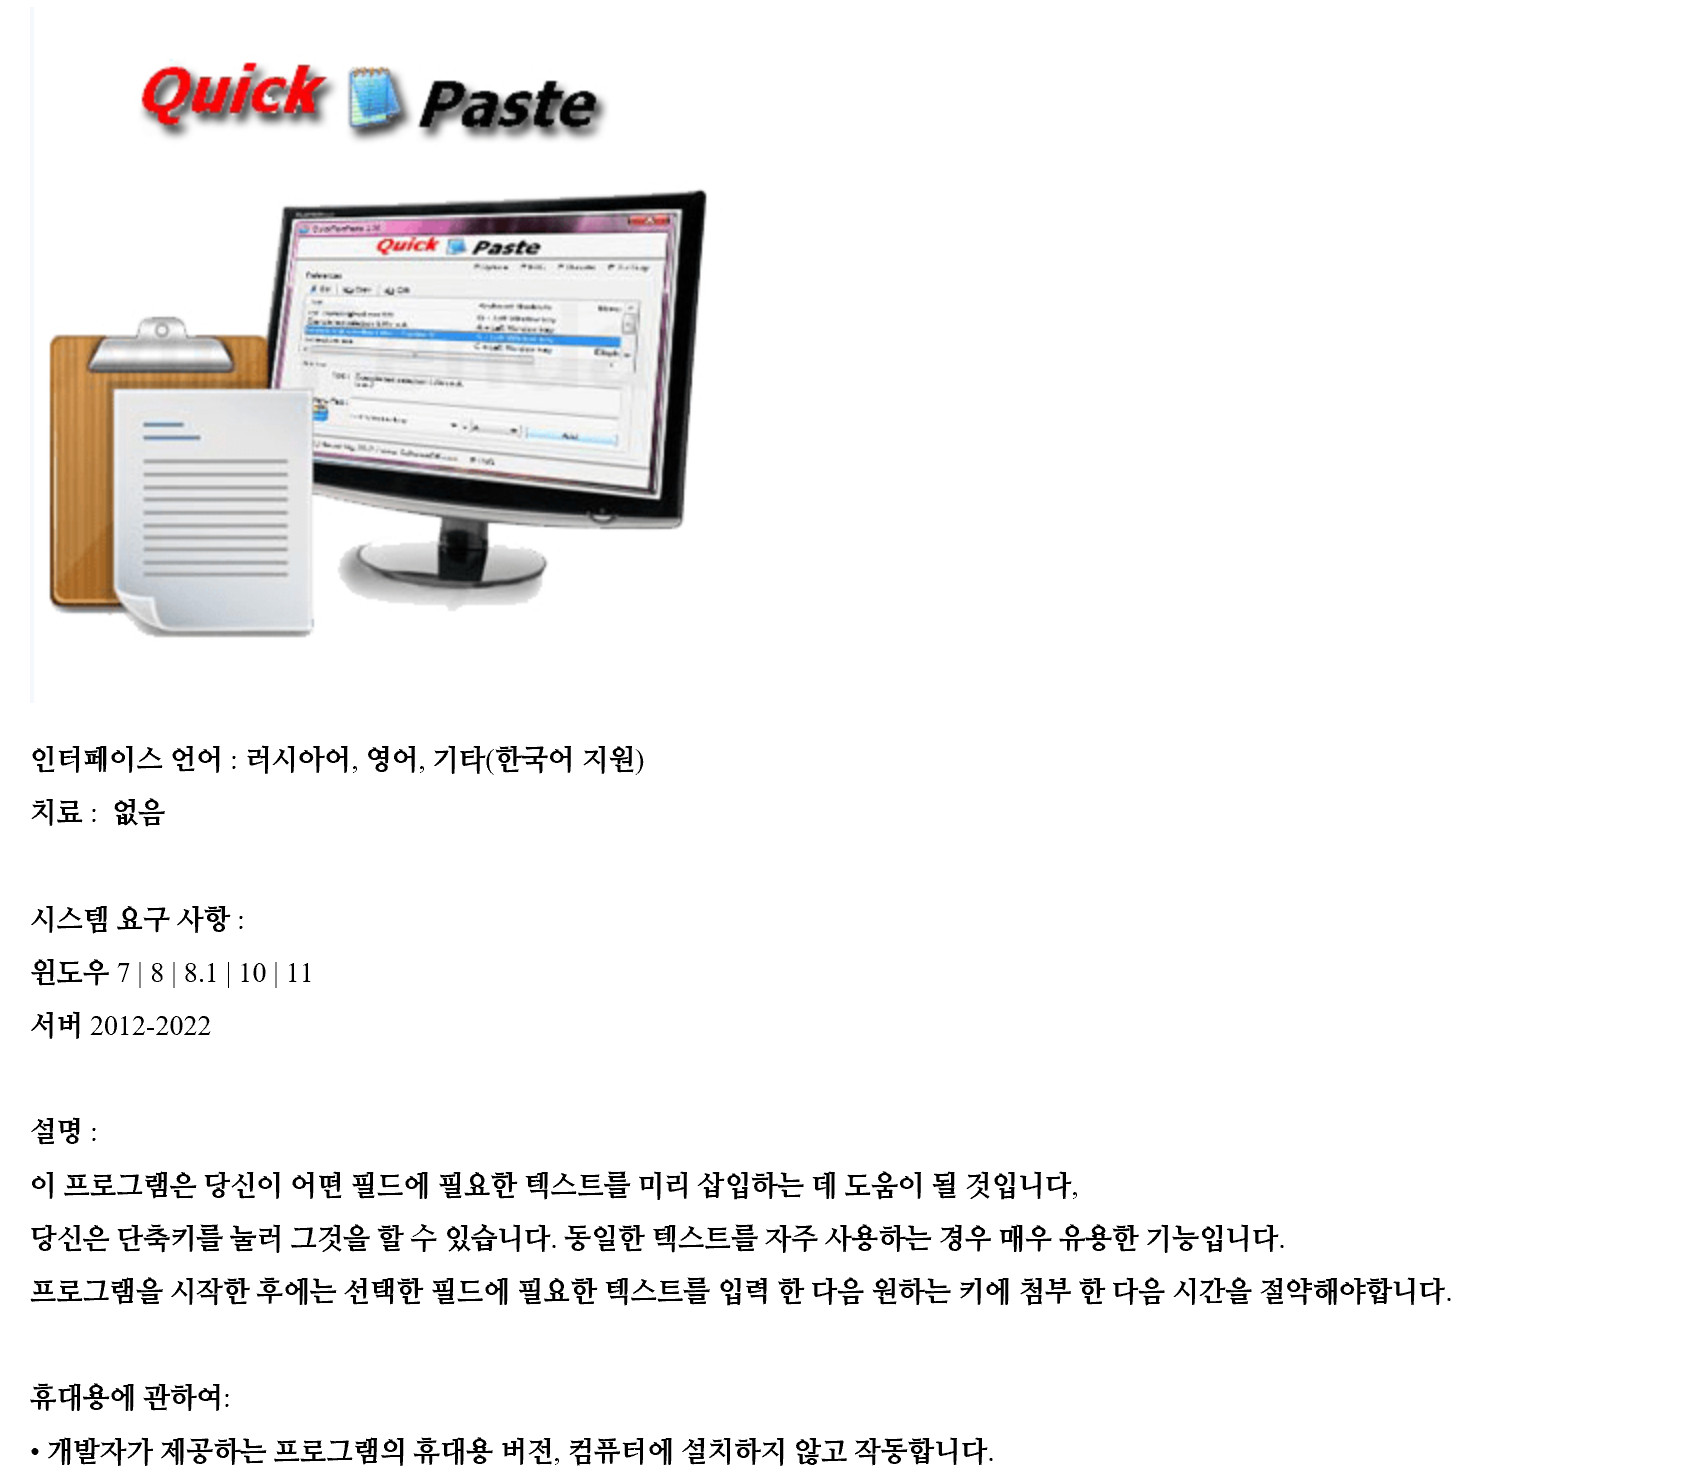 QuickTextPaste.jpg